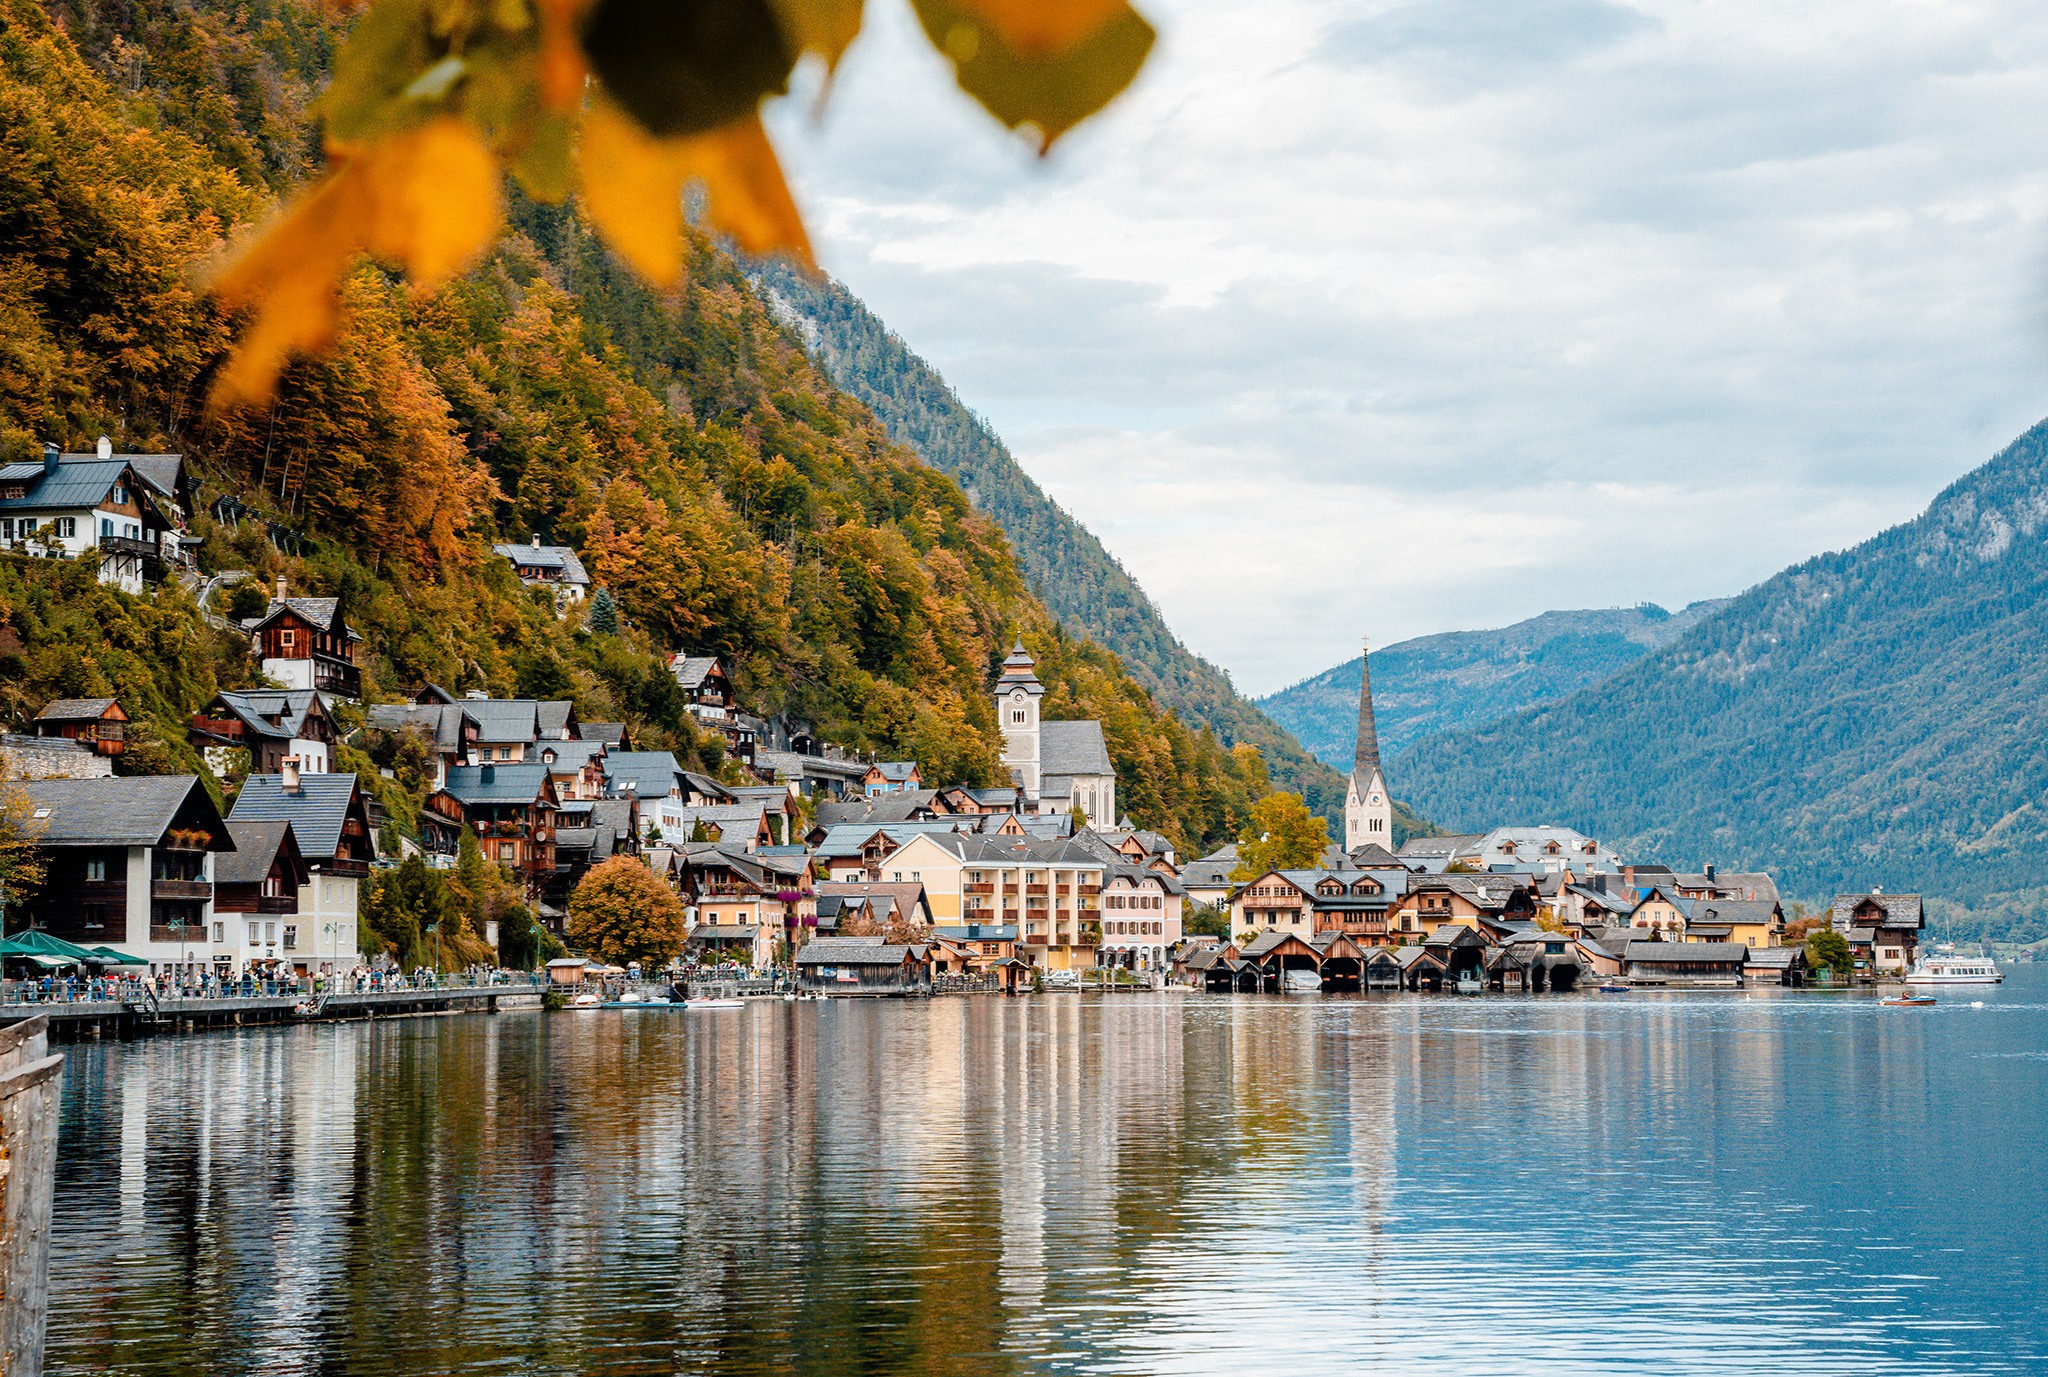 Chiêm ngưỡng khung cảnh mùa thu ở Hallstatt - Làng cổ bên hồ đẹp nhất thế giới